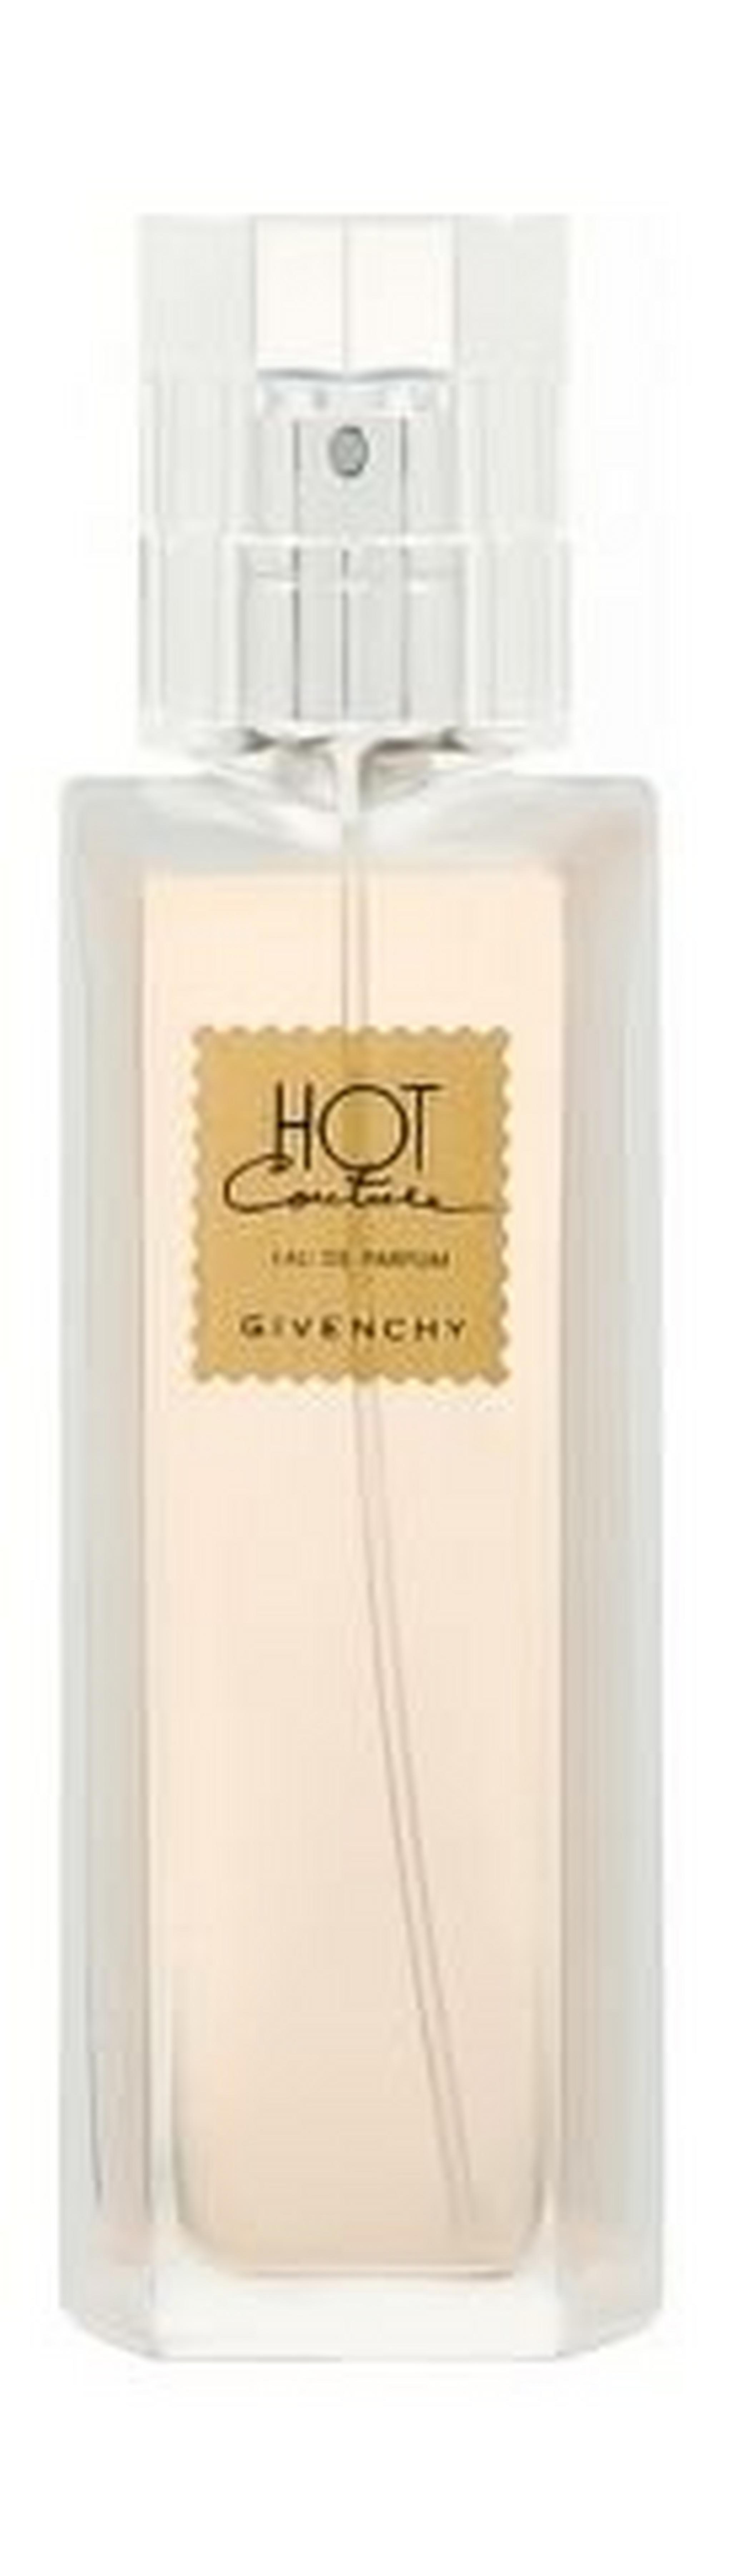 Hot Couture by Givenchy For Women 50 ML Eau de Parfum